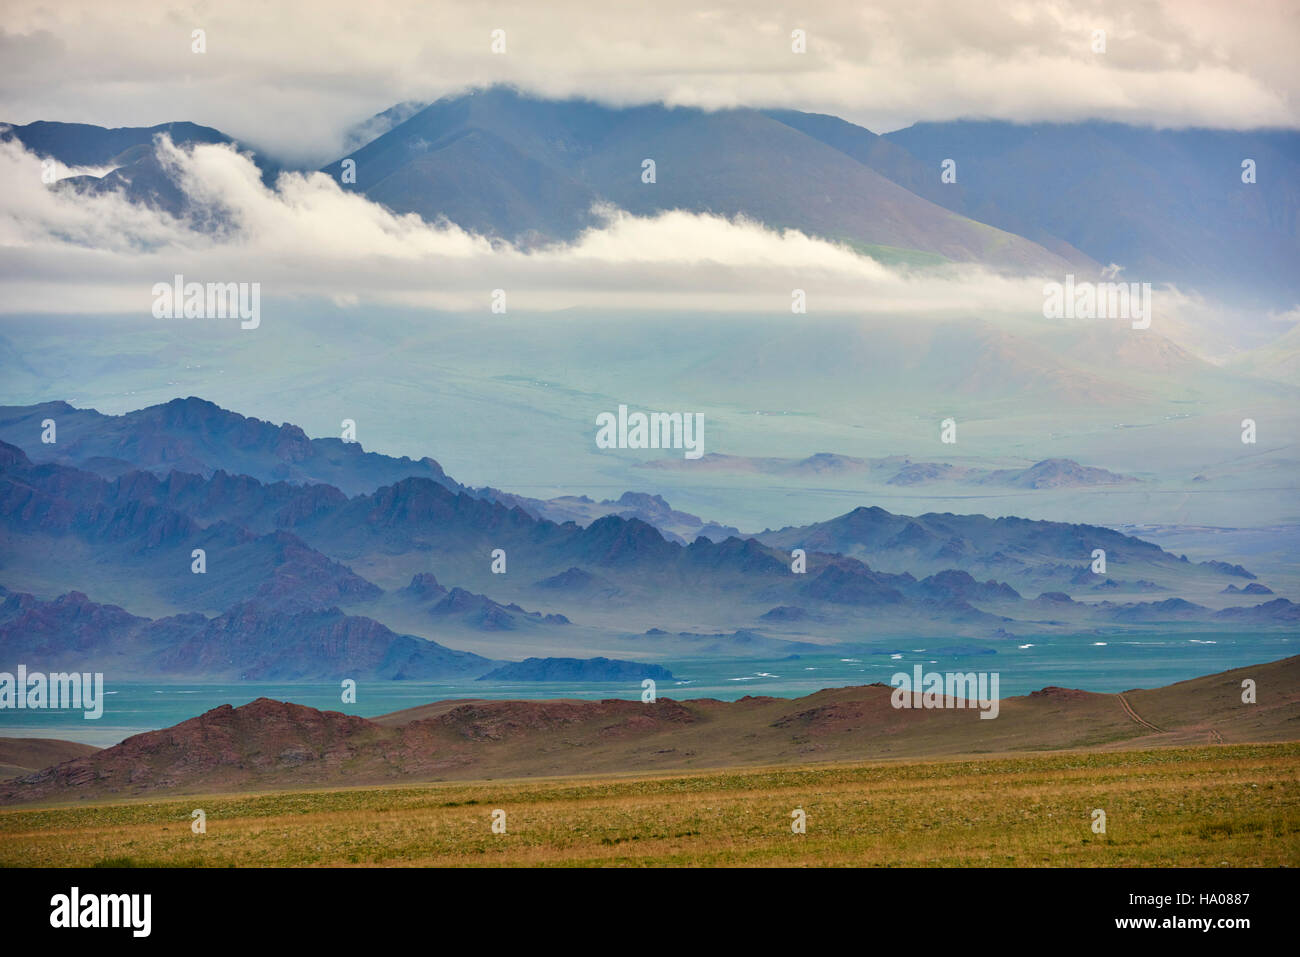 La Mongolie, Bayan-Ulgii province, l'ouest de la Mongolie, les montagnes colorées de l'Altay Banque D'Images